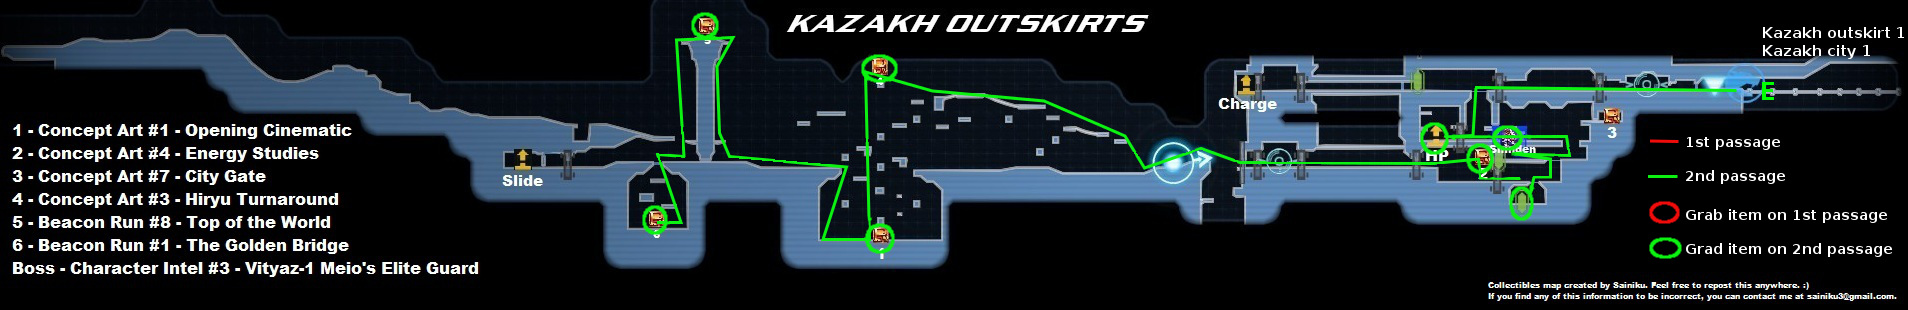 Kazakh Outskirt - 2nd passage